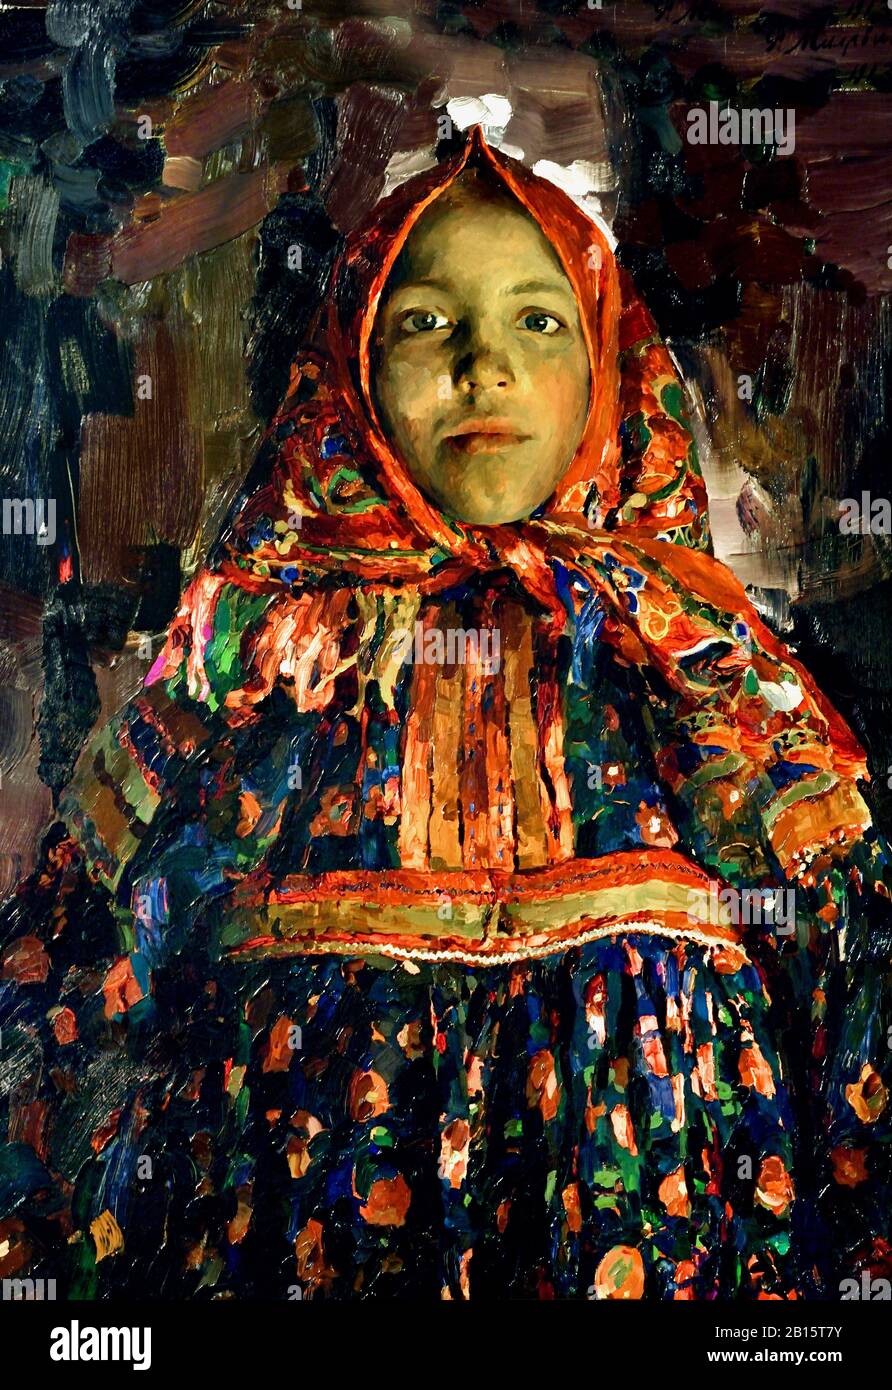 Verka Bauernfrau, 1913 ( Die Heldinnen des Künstlers lebten in den Dörfern der Provinz Ryazan und trugen helle und bunte Kleidung. Verka verbirgt ihre Figur hinter einer Masse von Motley-Kleidung und ist anrührend schüchtern und schüchtern. Sie ist fast wie ein animiertes Idol.) Philipp Malyavin Russland, Russisch, Föderation, . Stockfoto